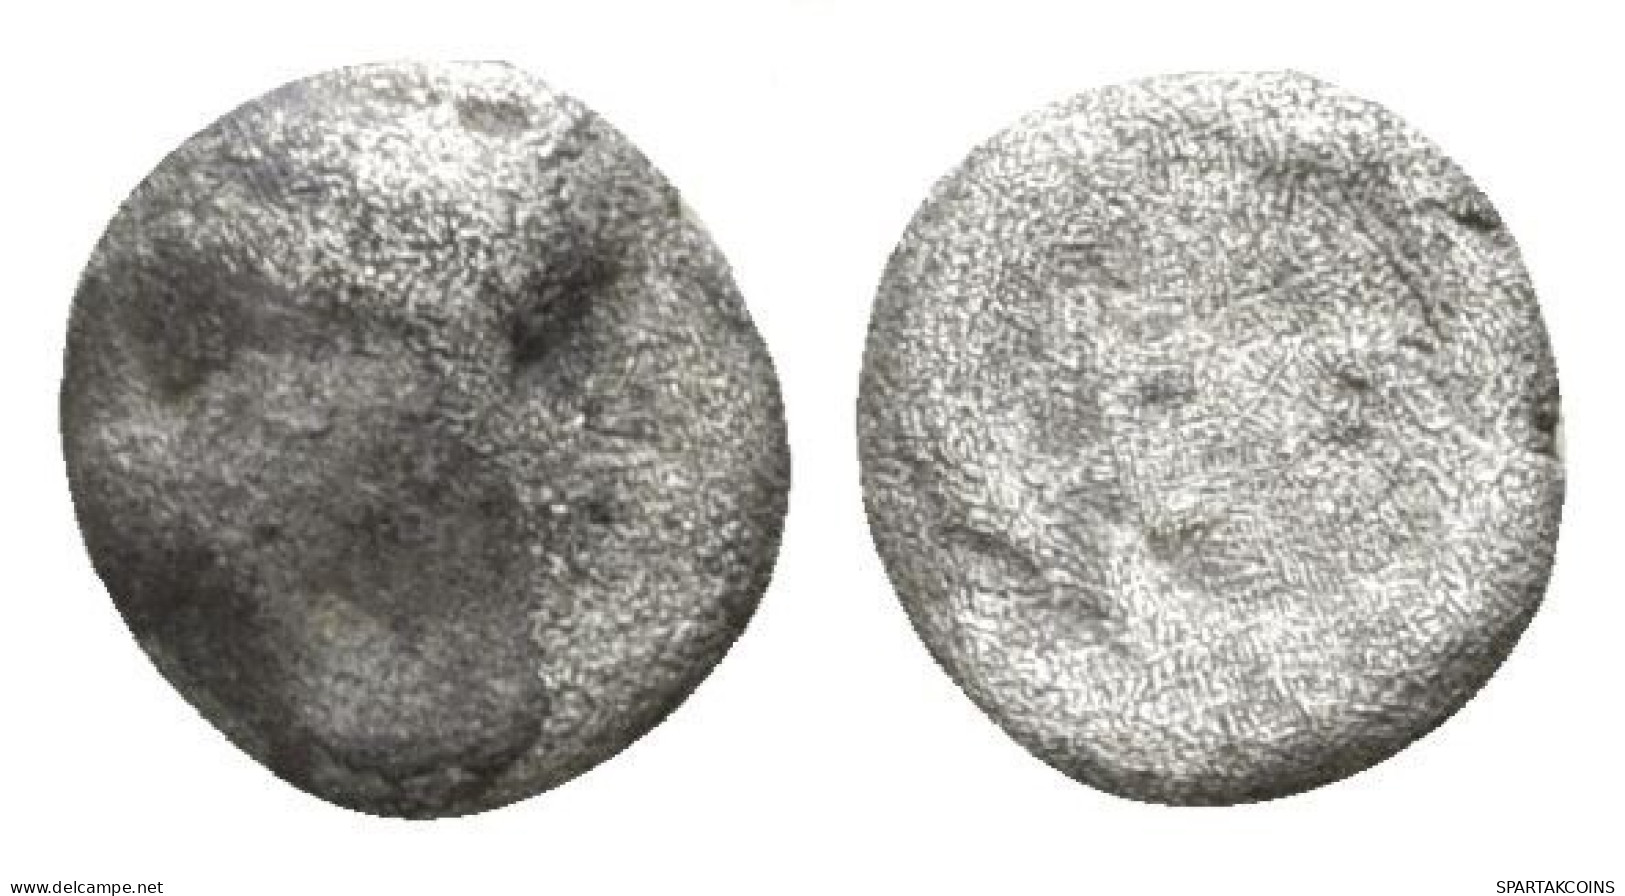 ANTONINUS PIUS Syria Antiochia Wreath Kranz ROMAN Coin2.86g/17mm #ANT1006.25.U.A - Die Antoninische Dynastie (96 / 192)